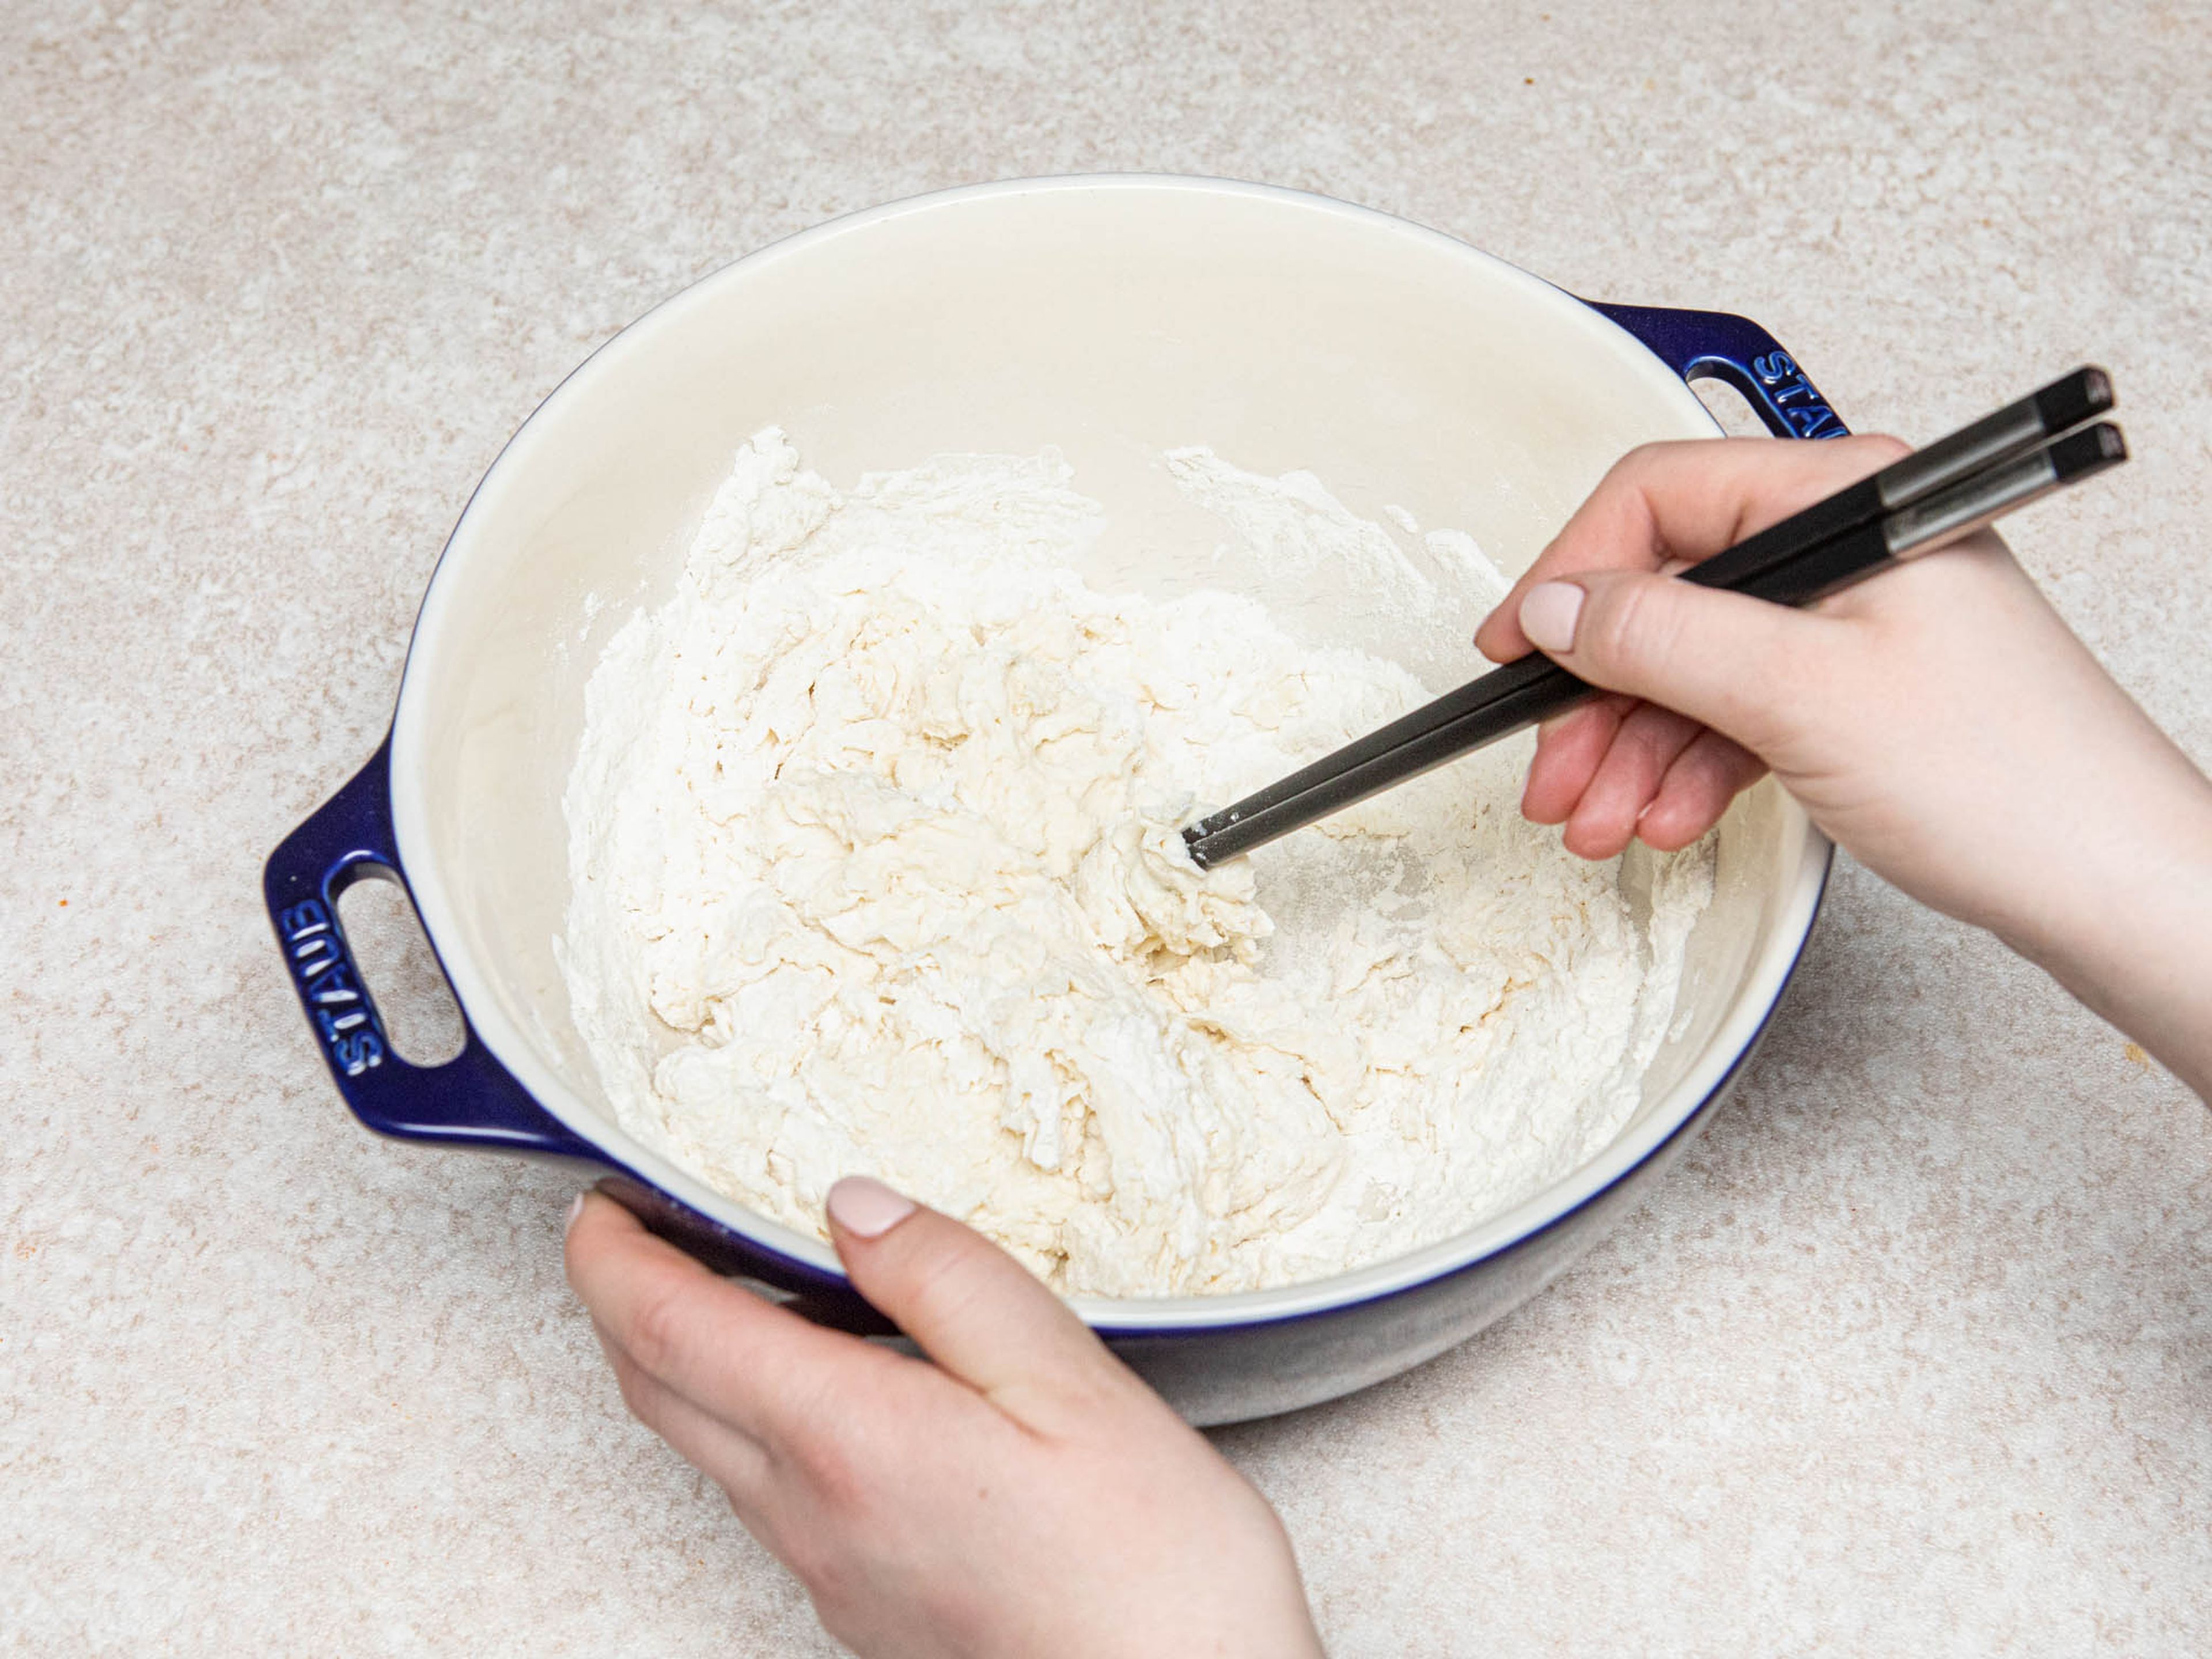 Mehl und Salz in einer großen Schüssel miteinader vermengen. Restliches Wasser langsam mit Stäbchen oder einem Holzlöffel einrühren, dann mit den Händen kneten, bis ein glatter Teig entstanden ist. Mit einem Geschirrtuch abdecken und für ca. 20 Min. ruhen lassen.